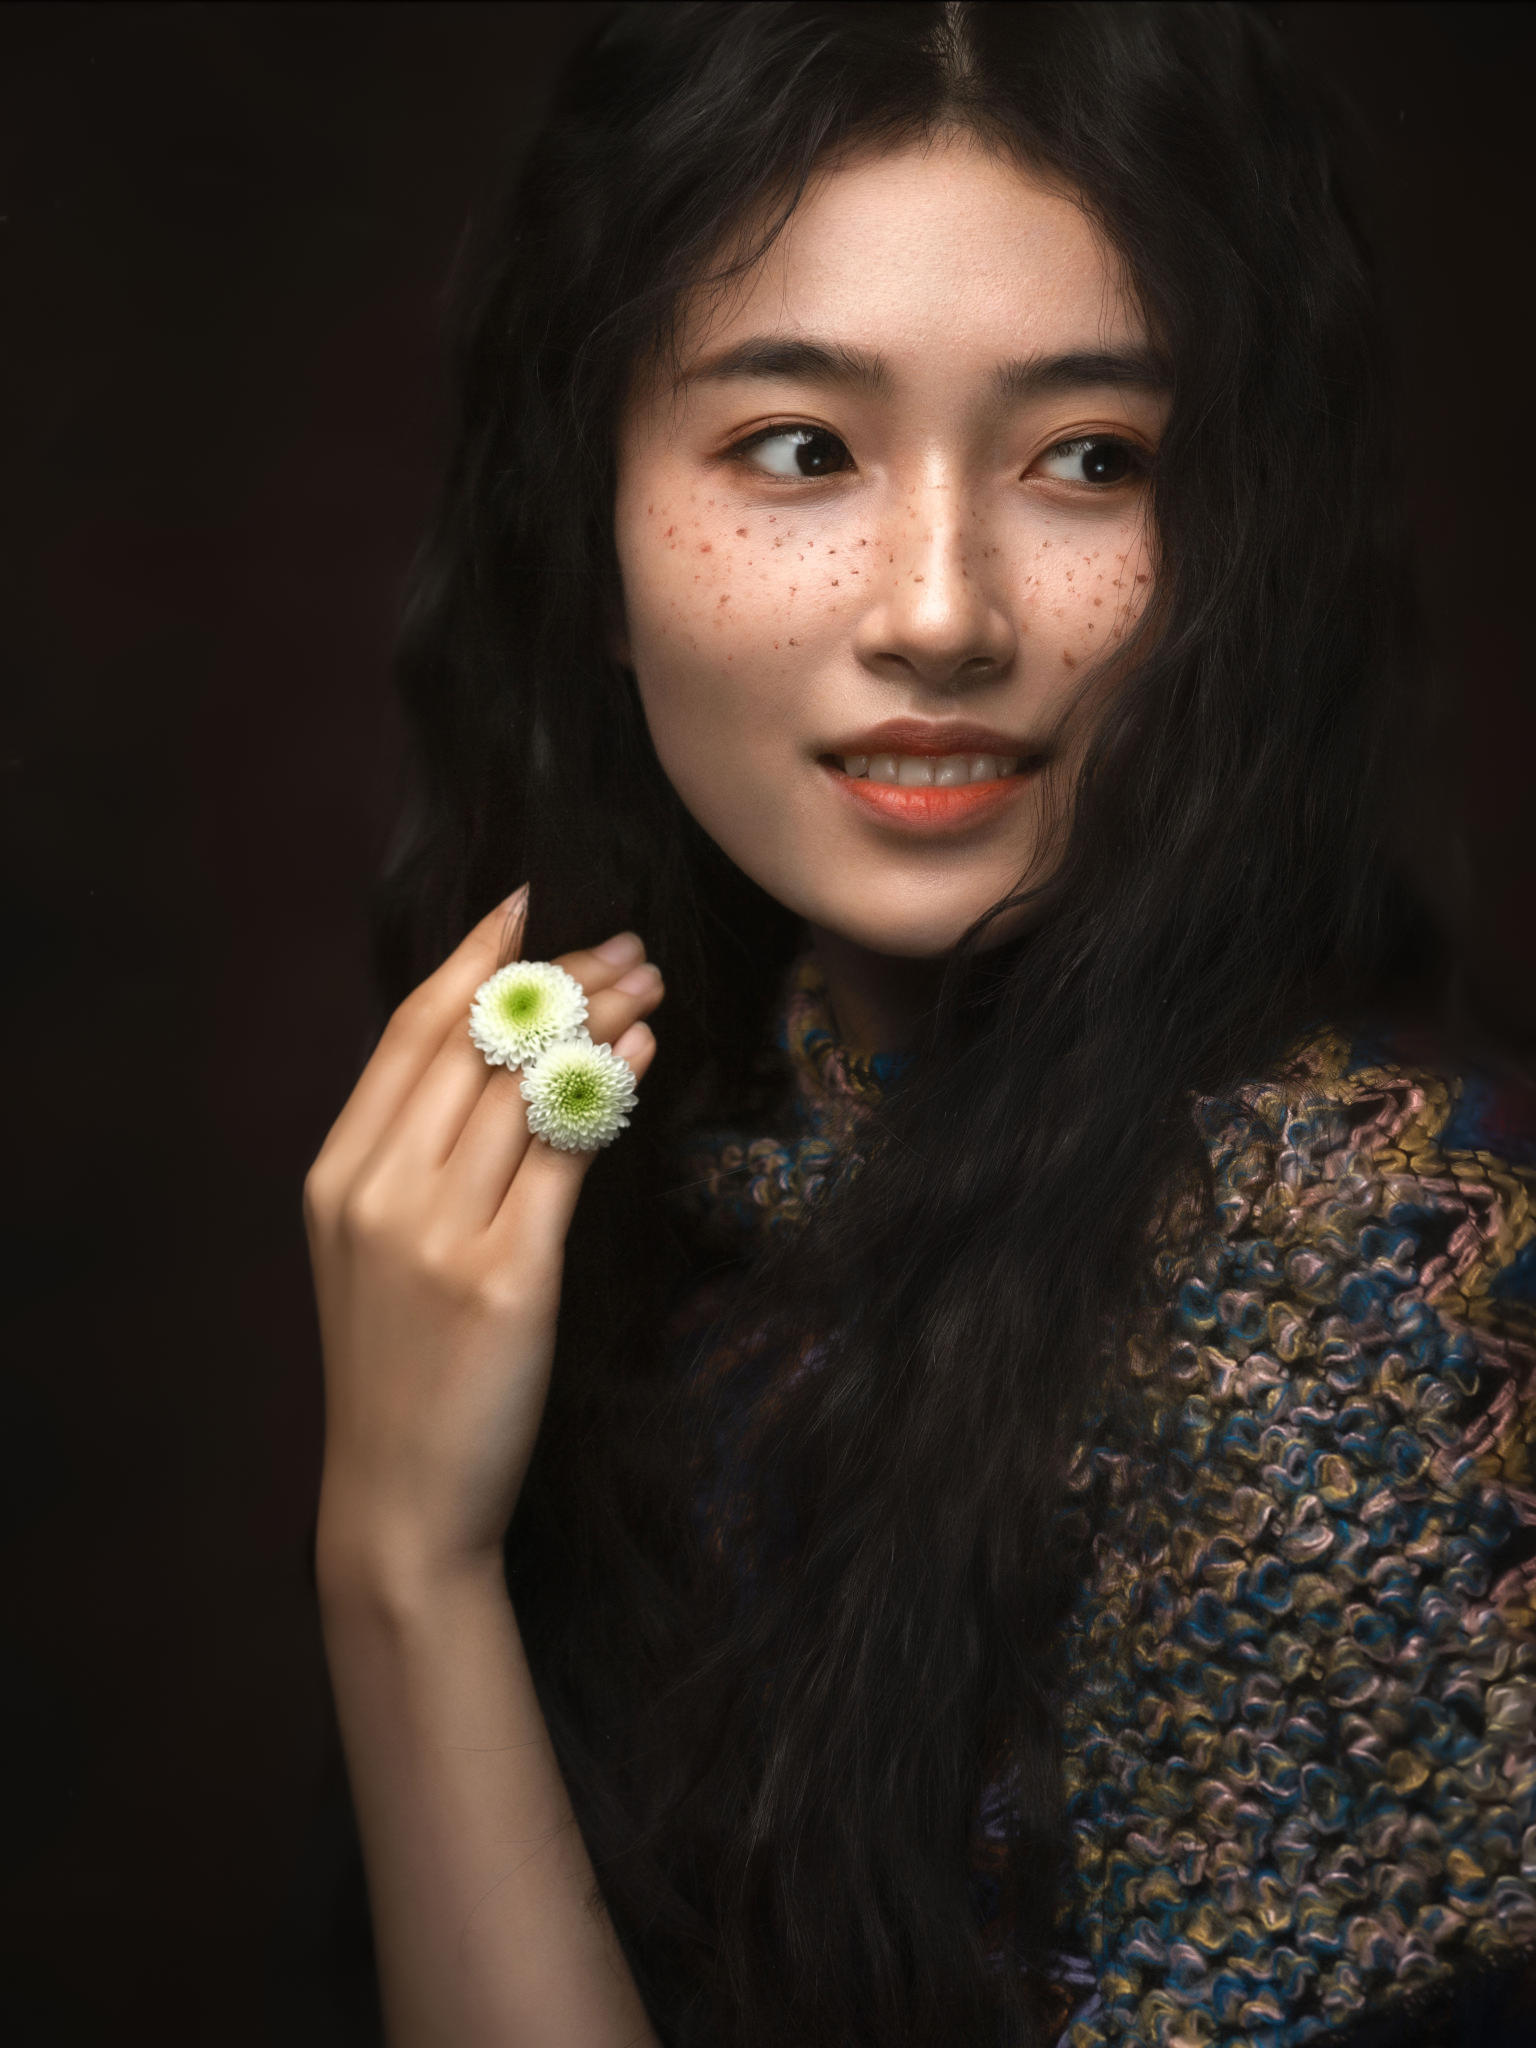 People 1536x2048 Lee Hu women Asian dark hair freckles looking away smiling flowers simple background dark eyes portrait